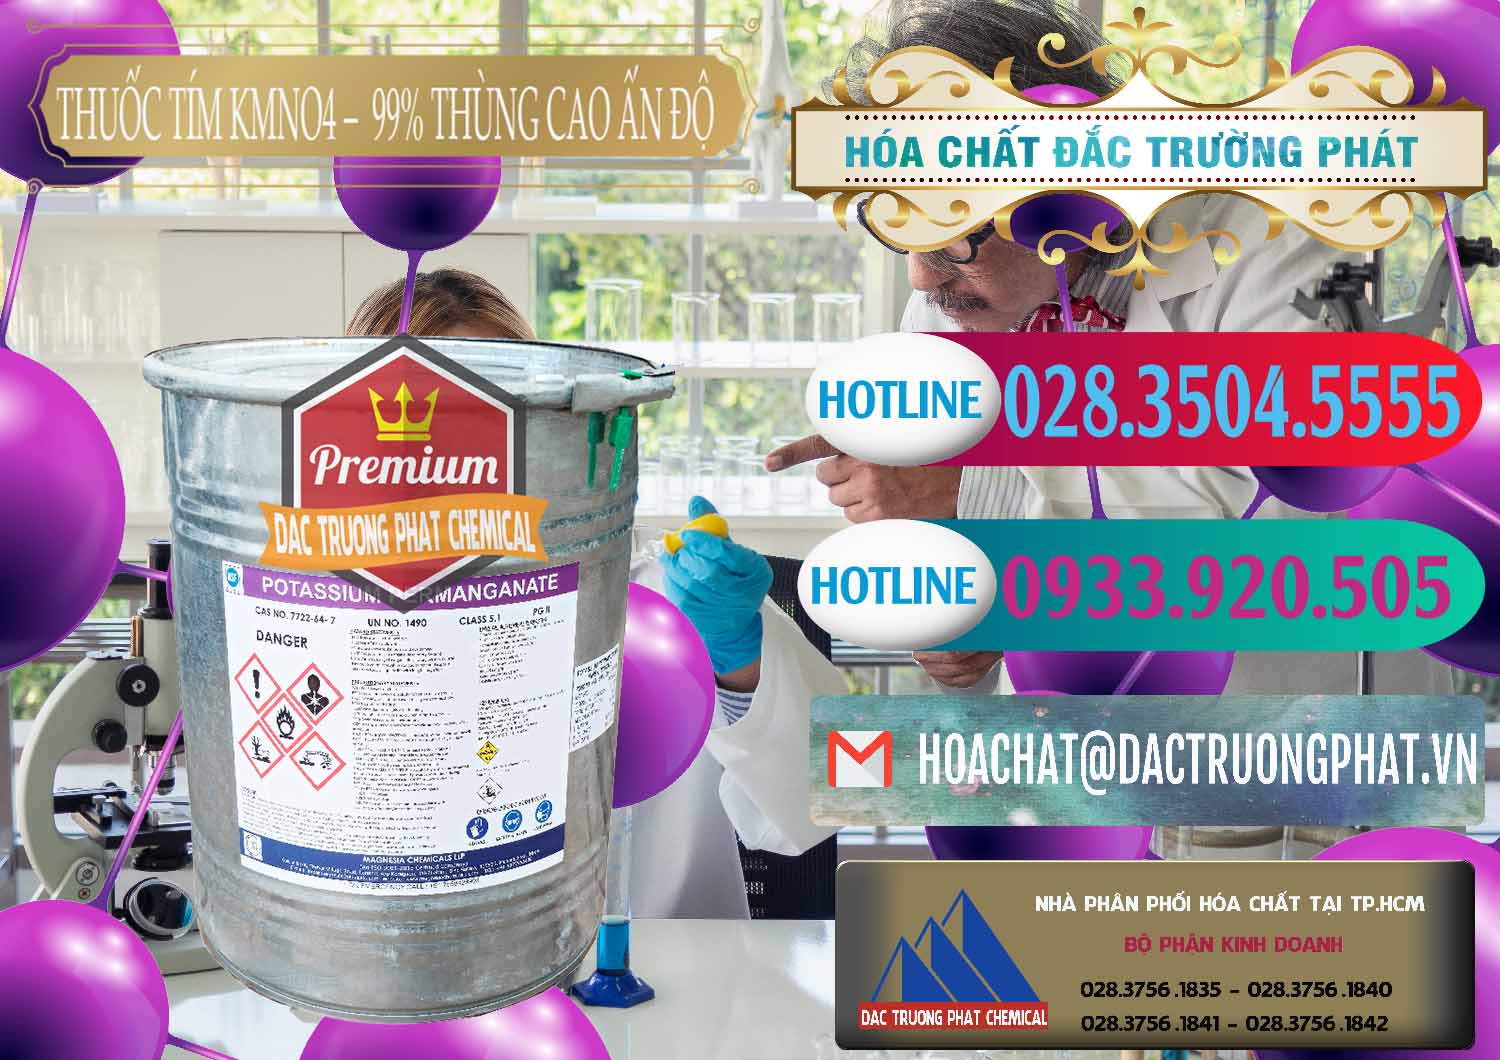 Công ty chuyên cung cấp _ bán Thuốc Tím - KMNO4 Thùng Cao 99% Magnesia Chemicals Ấn Độ India - 0164 - Nơi bán và phân phối hóa chất tại TP.HCM - truongphat.vn